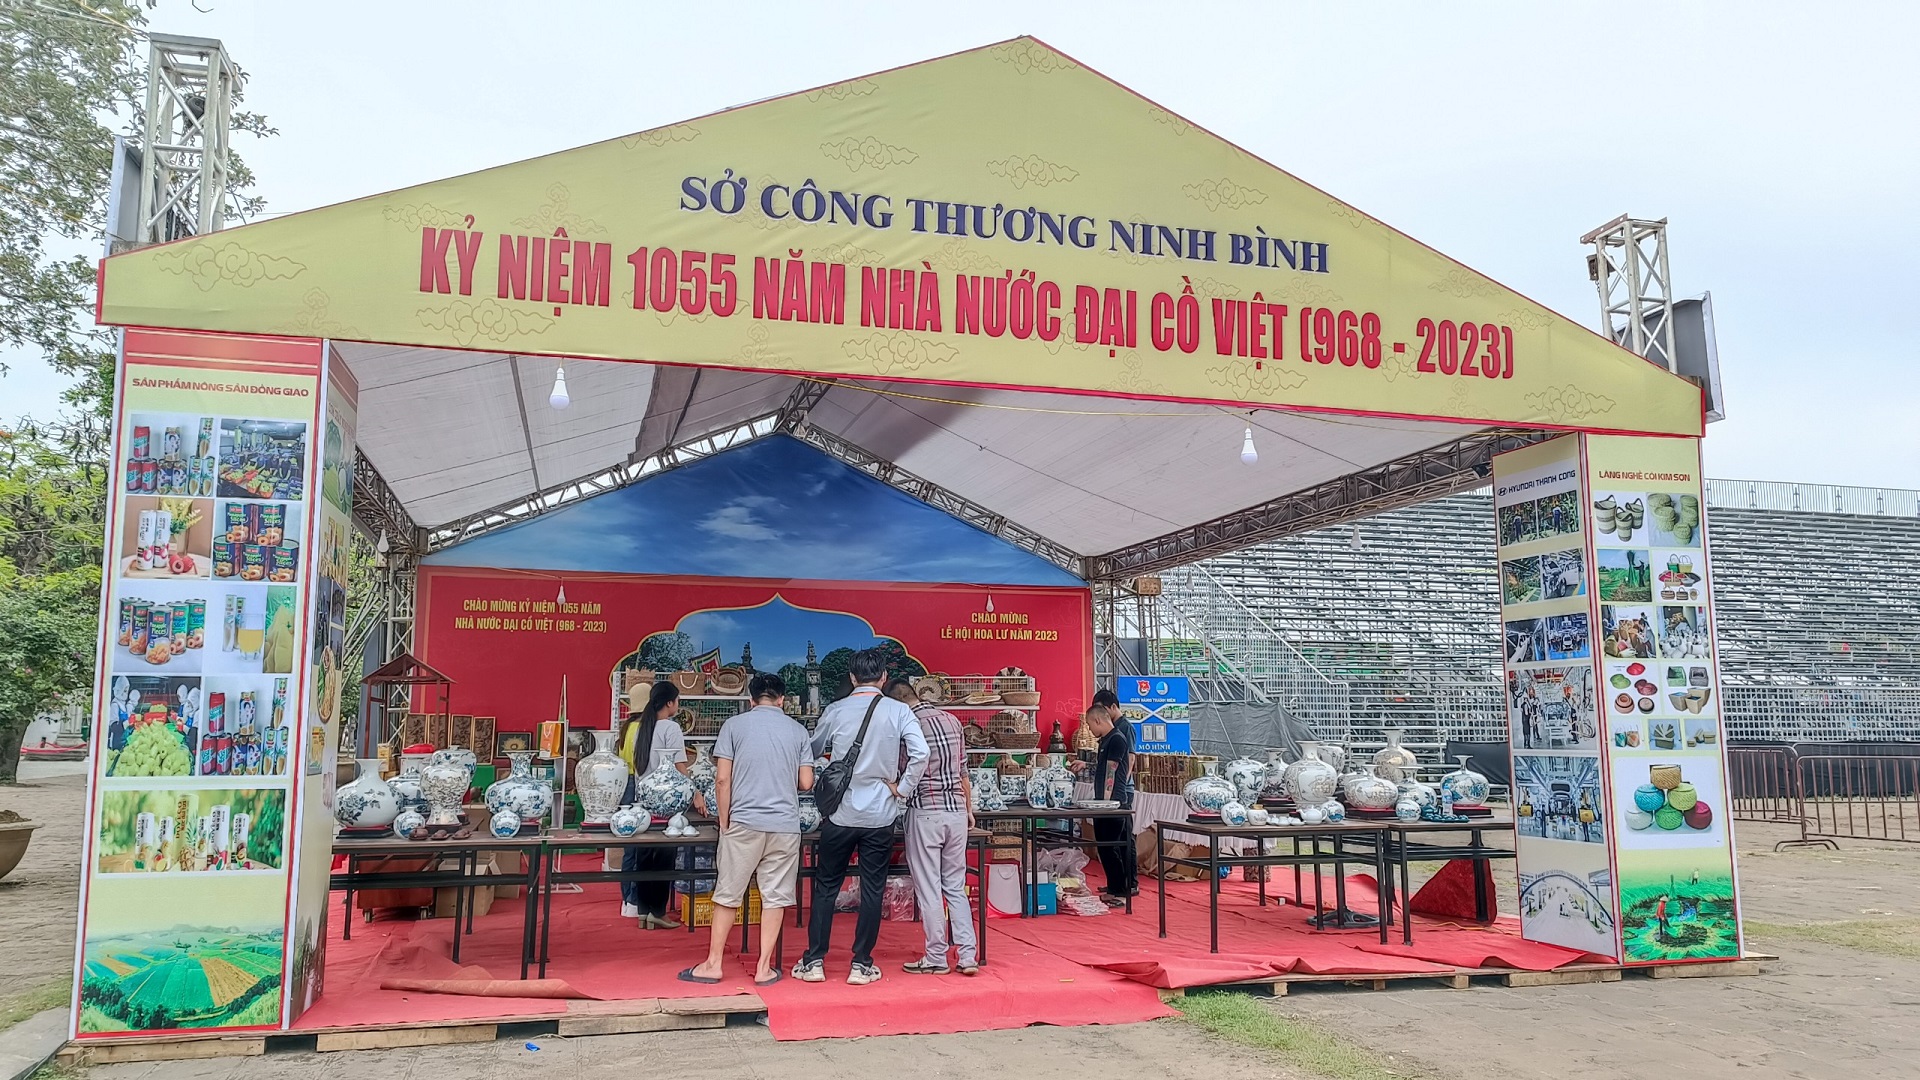 Tham gia gian hàng triển lãm giới thiệu một số sản phẩm thủ công truyền thống và đặc sản tiêu biểu tỉnh Ninh Bình tại Lễ kỷ niệm 1055 năm Nhà nước Đại Cồ Việt (968-2023) và Lễ hội Hoa Lư năm 2023